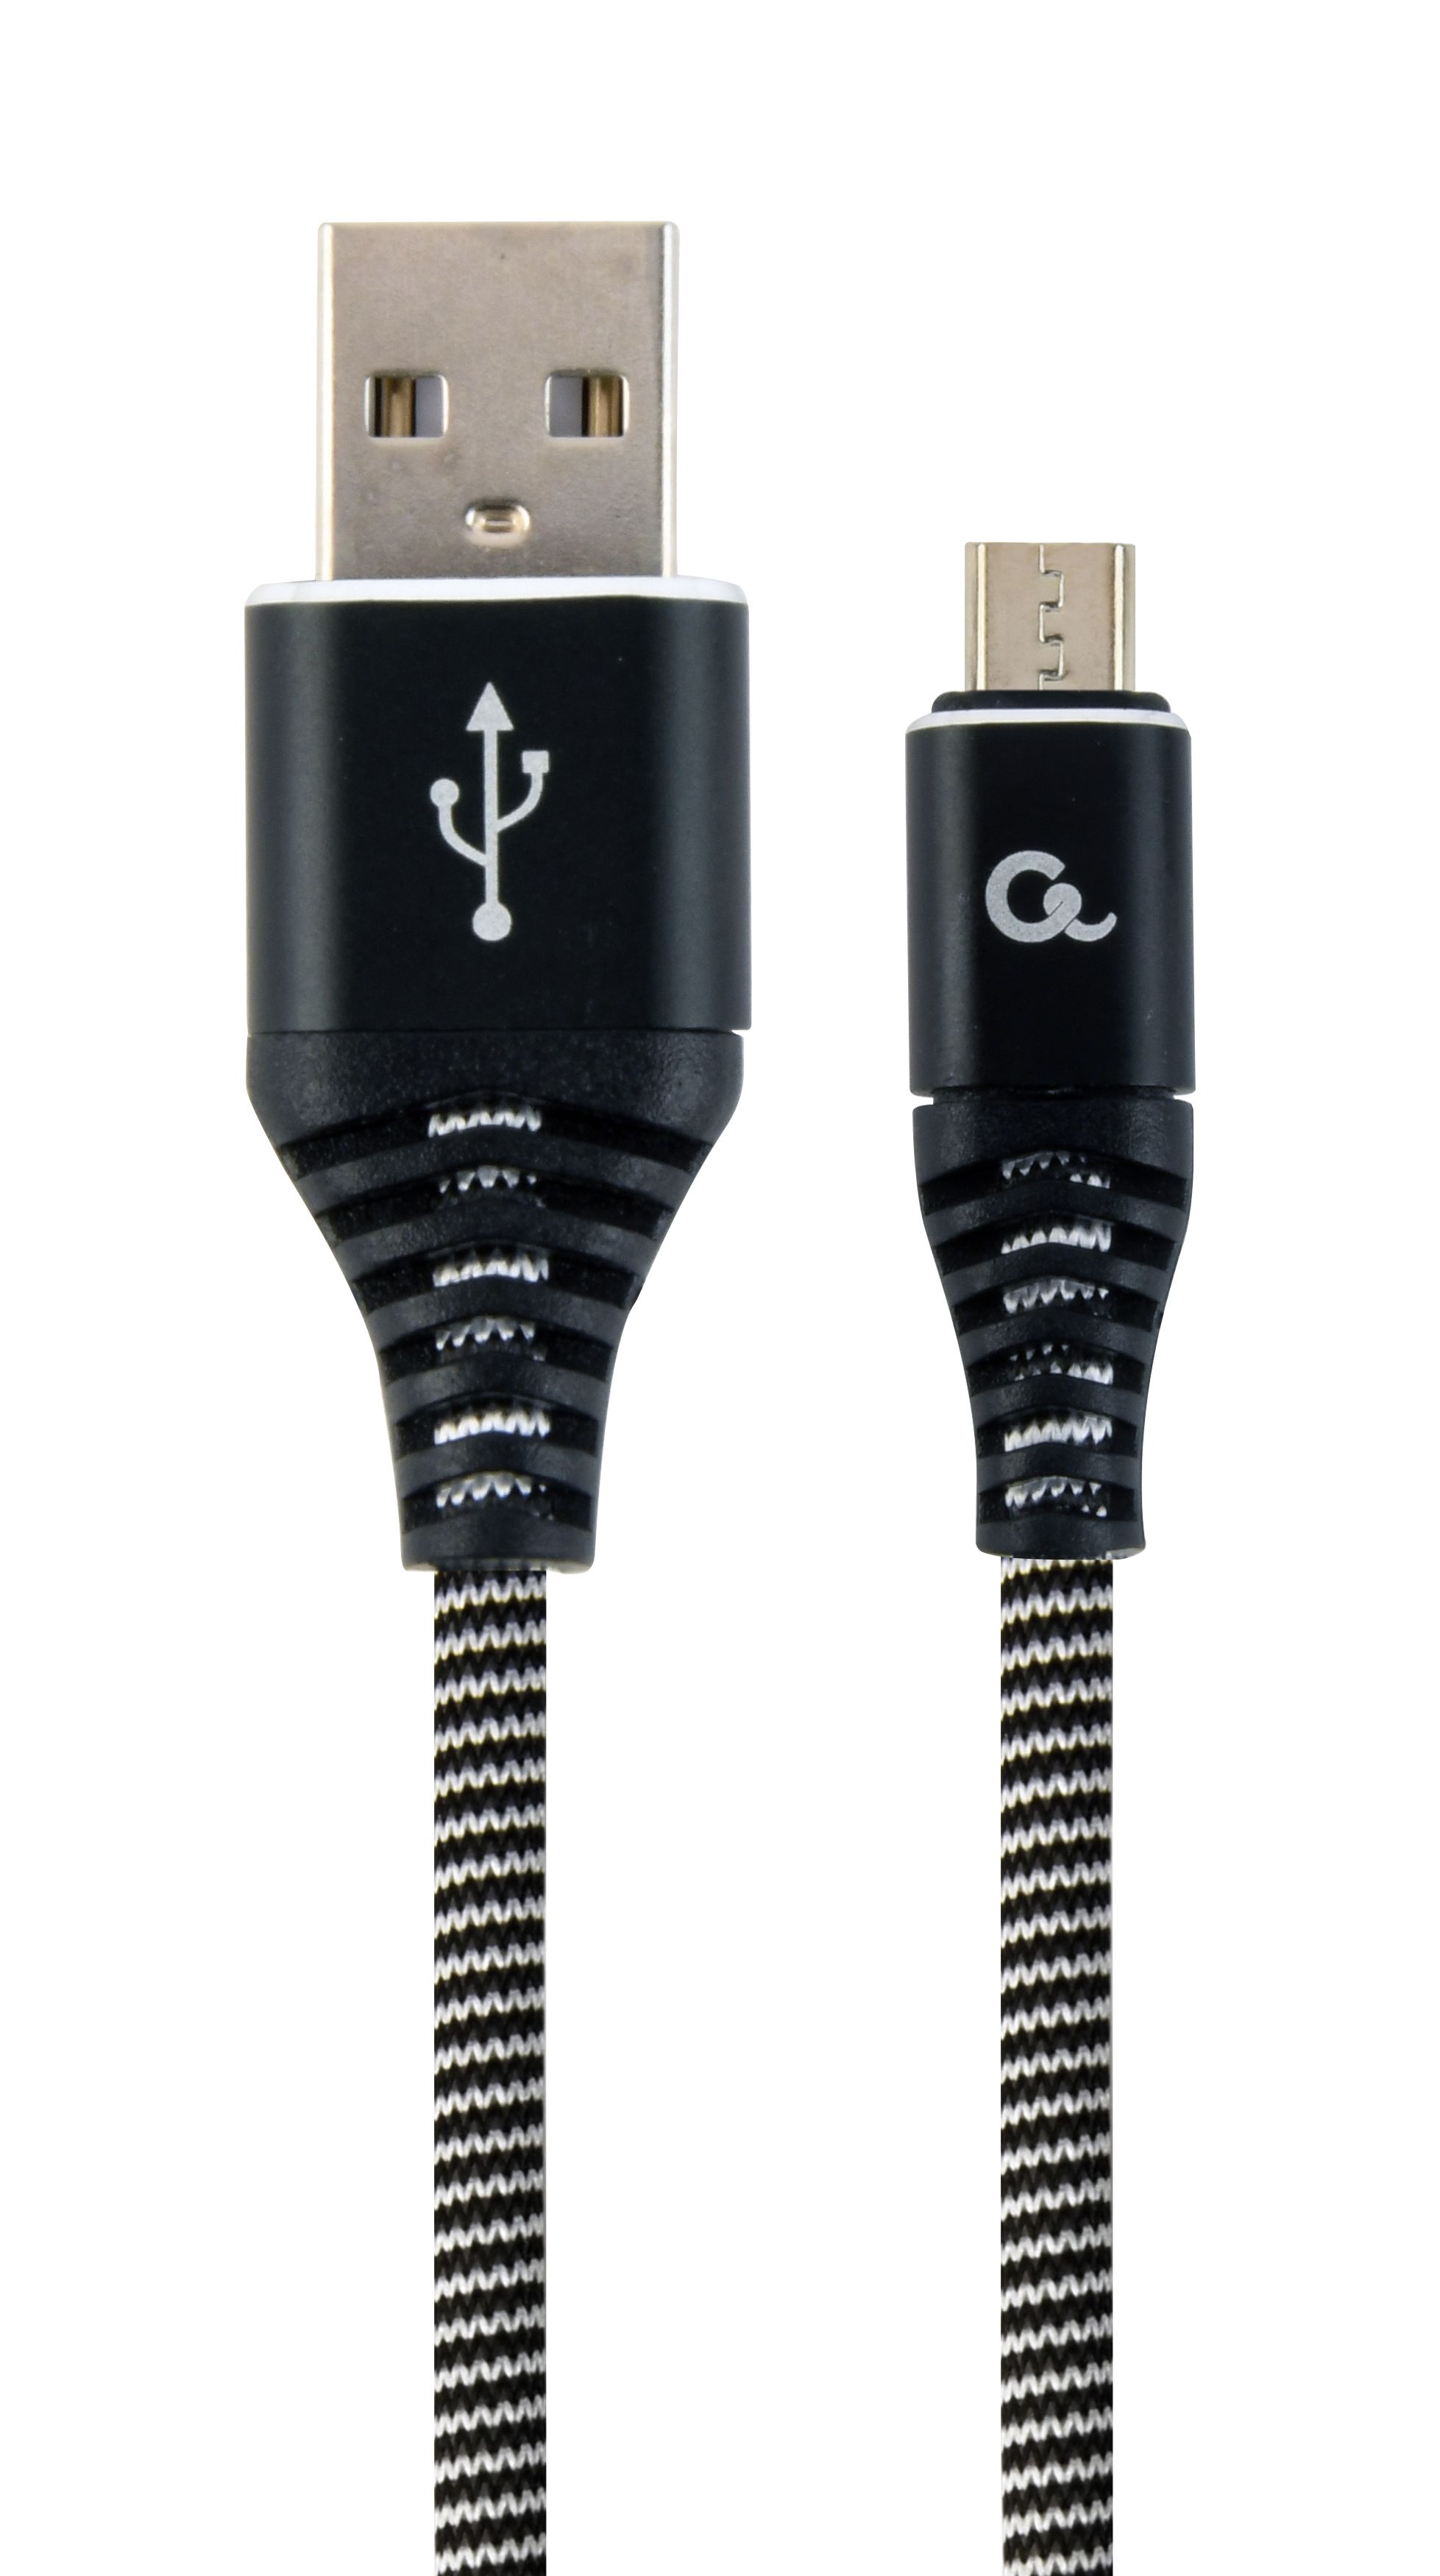 CABLU alimentare si date GEMBIRD, pt. smartphone, USB 2.0 (T) la Micro-USB 2.0 (T), 1m, premium, cablu cu impletire din bumbac, negru cu insertii albe, 